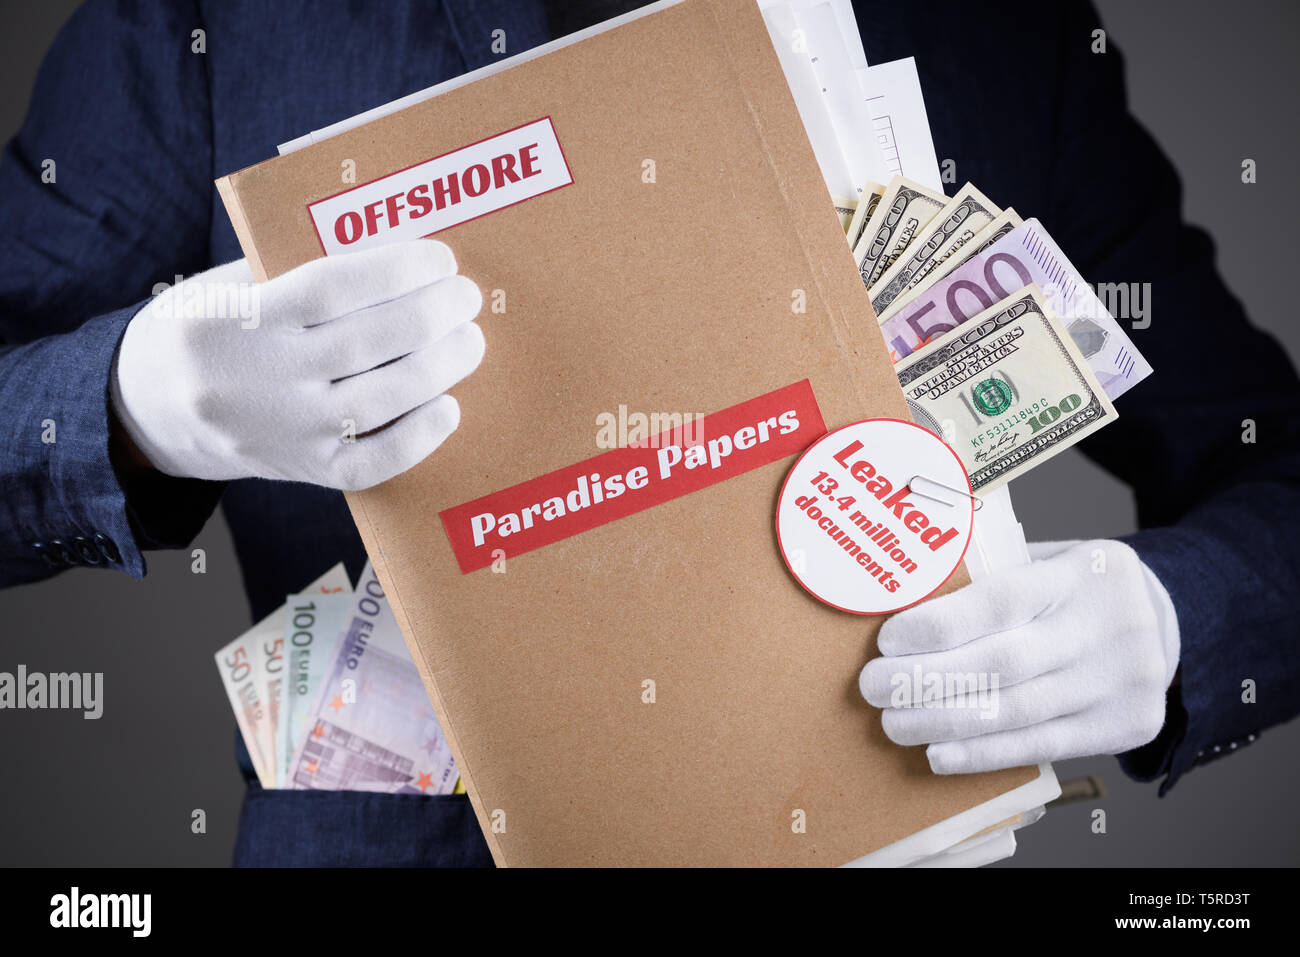 Mann in Anzug mit Euro und Dollar Währung in pokets und in weißen Handschuhen halten Papier Ordner mit dem Paradies Papiere und Offshore Label mit Dokumenten insid Stockfoto